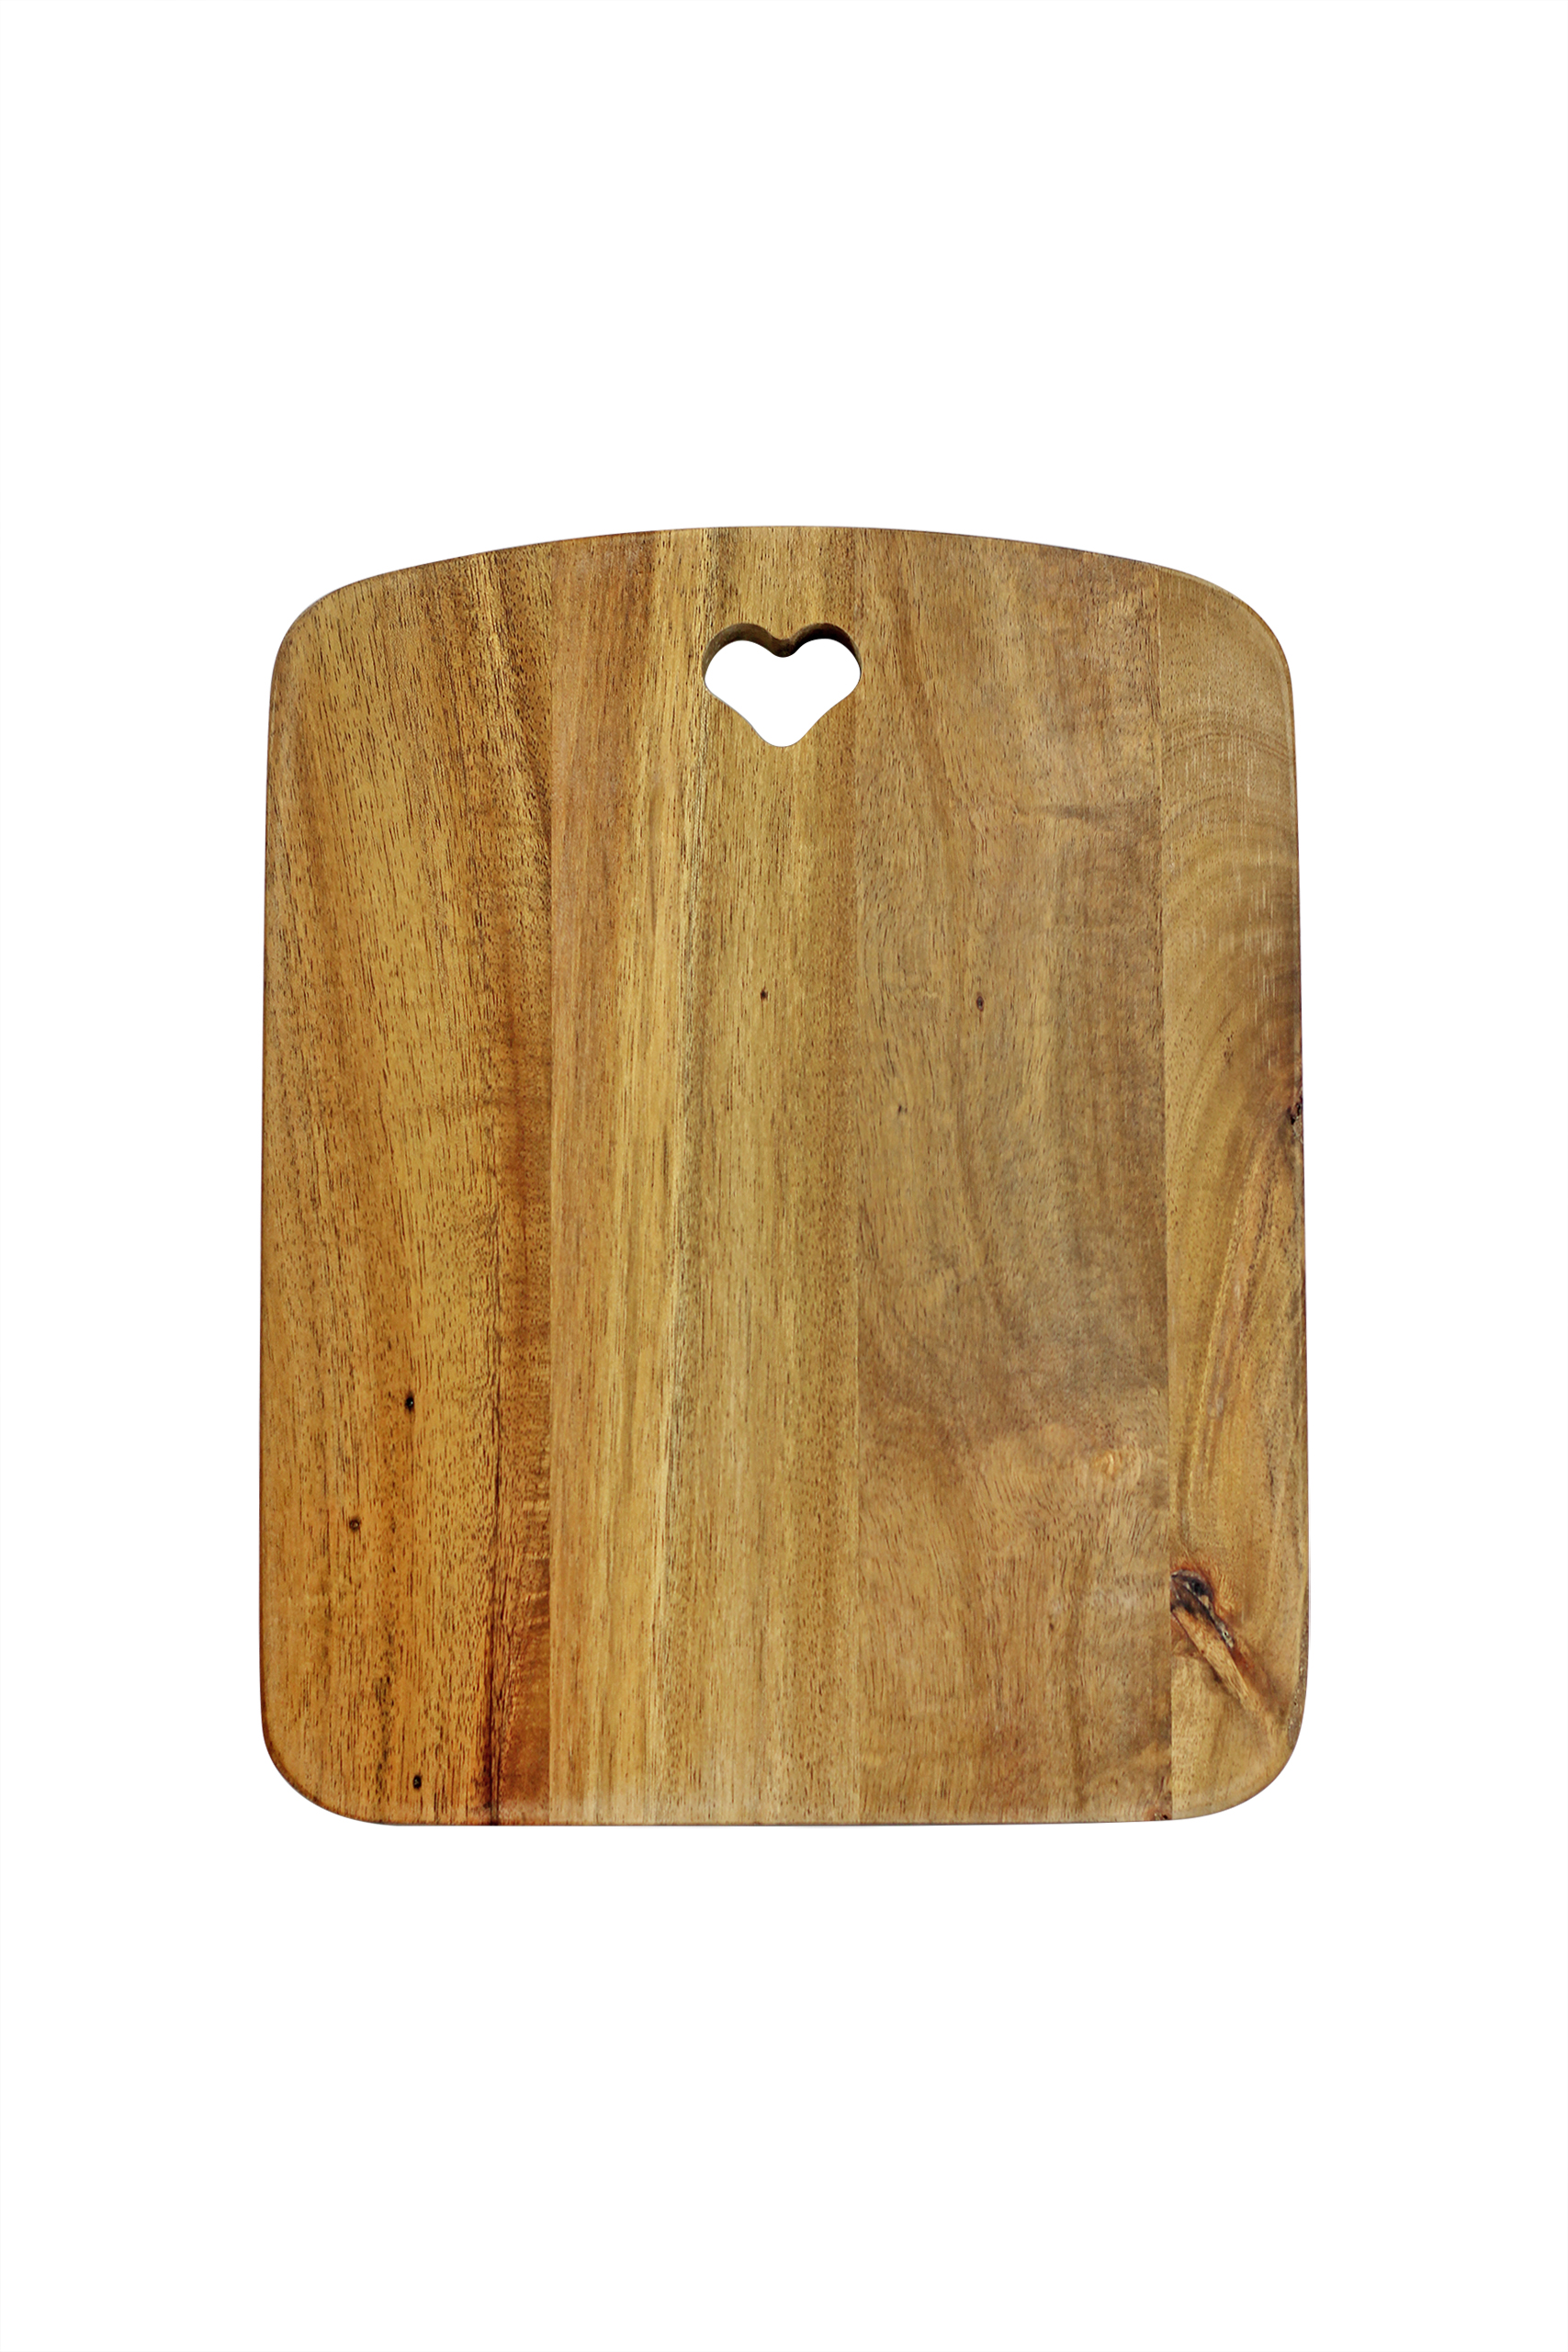 Natural Acacia Heart Chopping Board - Medium | Pretty Little Home